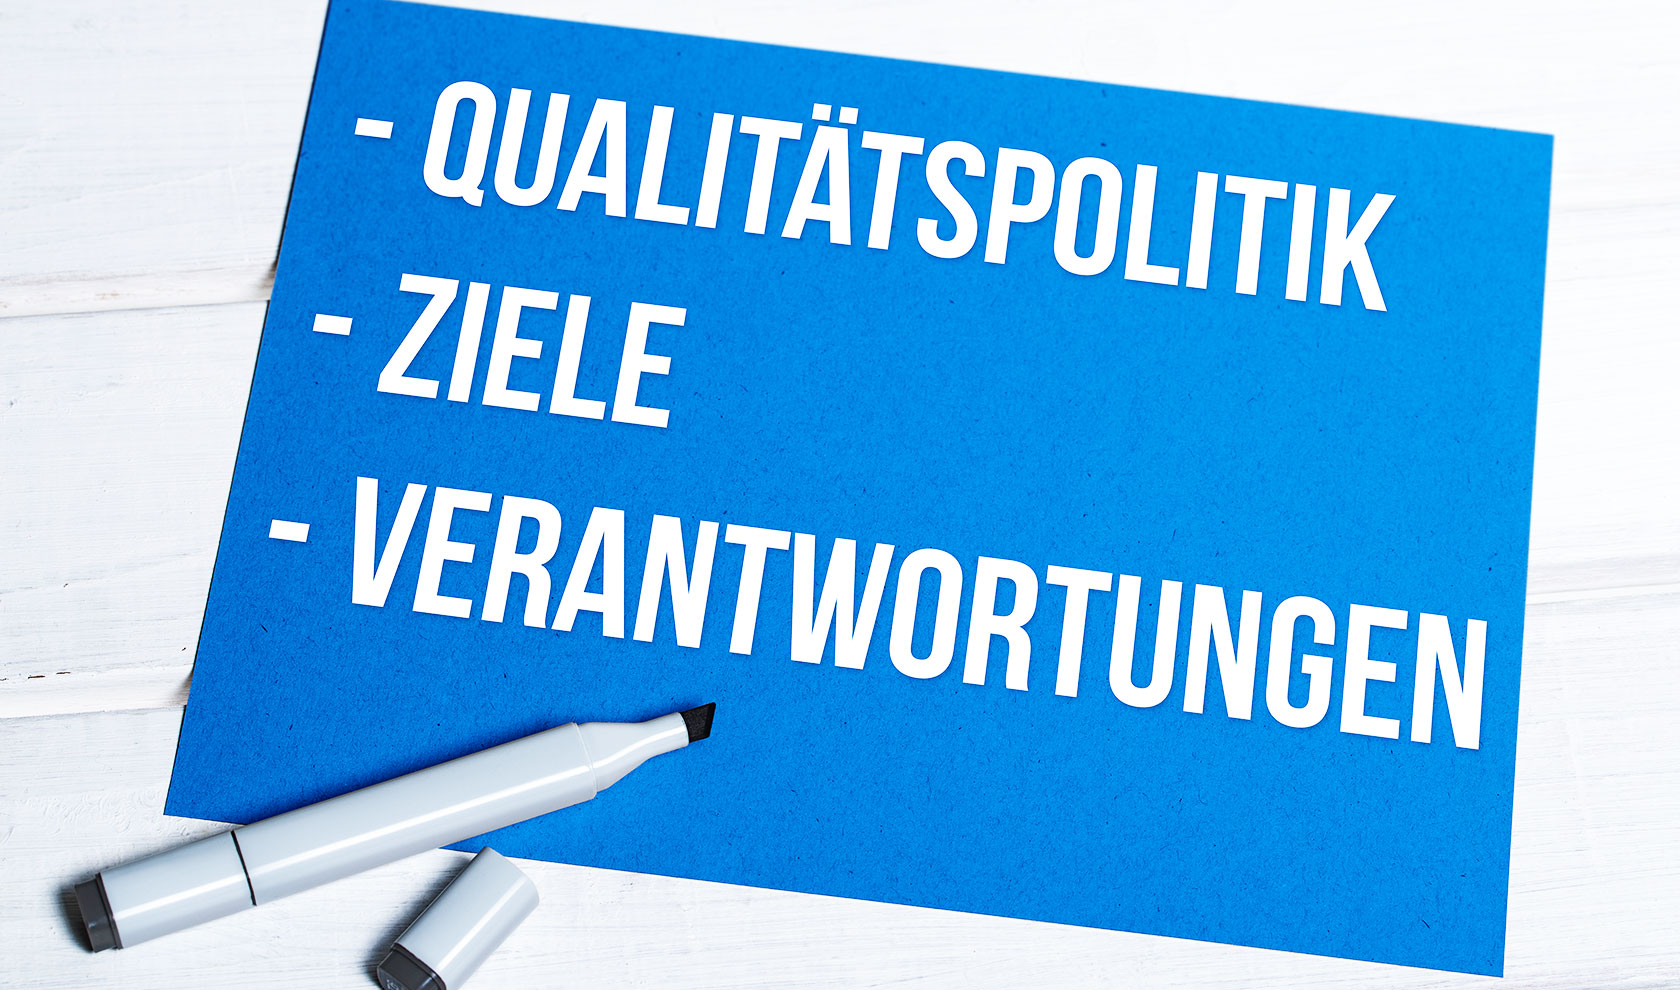 Qualitätspolitik Frankonia-Hydraulik, Ziele, Verantwortungen, blaues Schildchen, Stift